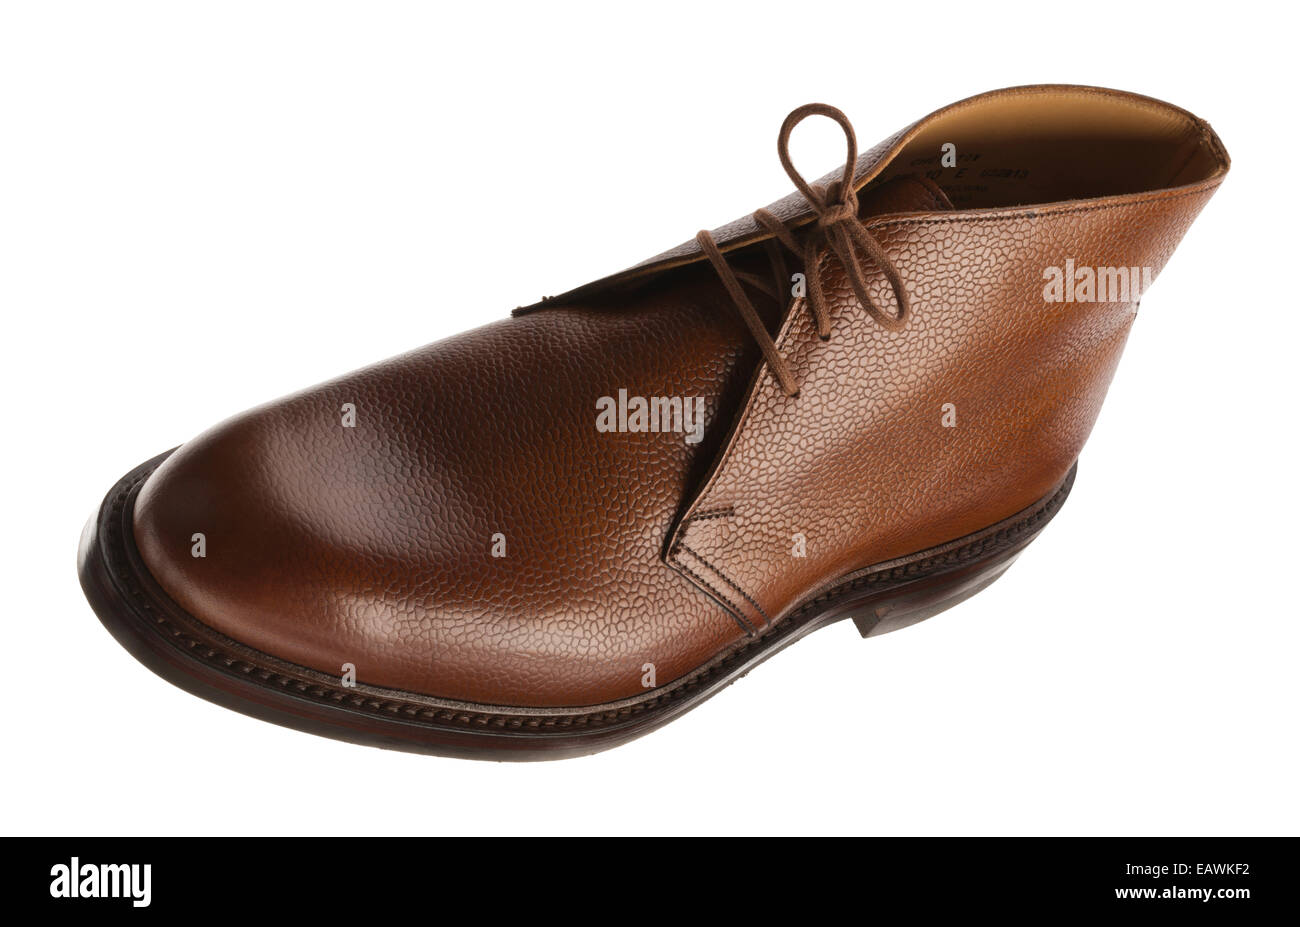 Rustikal Englisch Leder-Schuh. Polierte Oberfläche des englischen braun  Leder, in Northampton mit besetzt Dainite Gummisohle Stockfotografie - Alamy